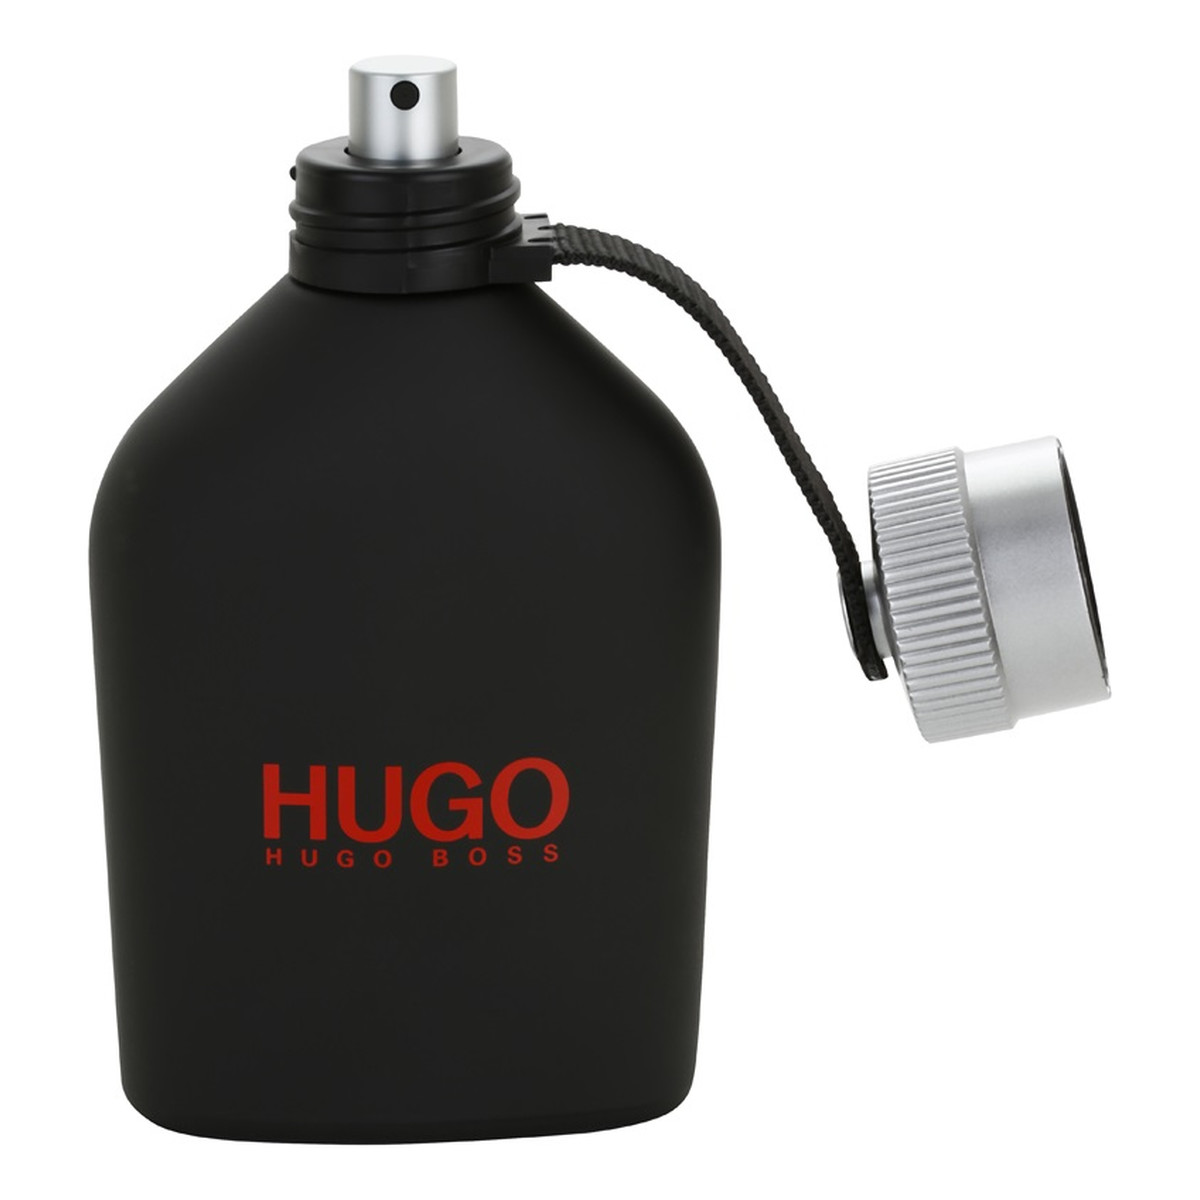 Hugo Boss Hugo Just Different Woda toaletowa spray 125ml